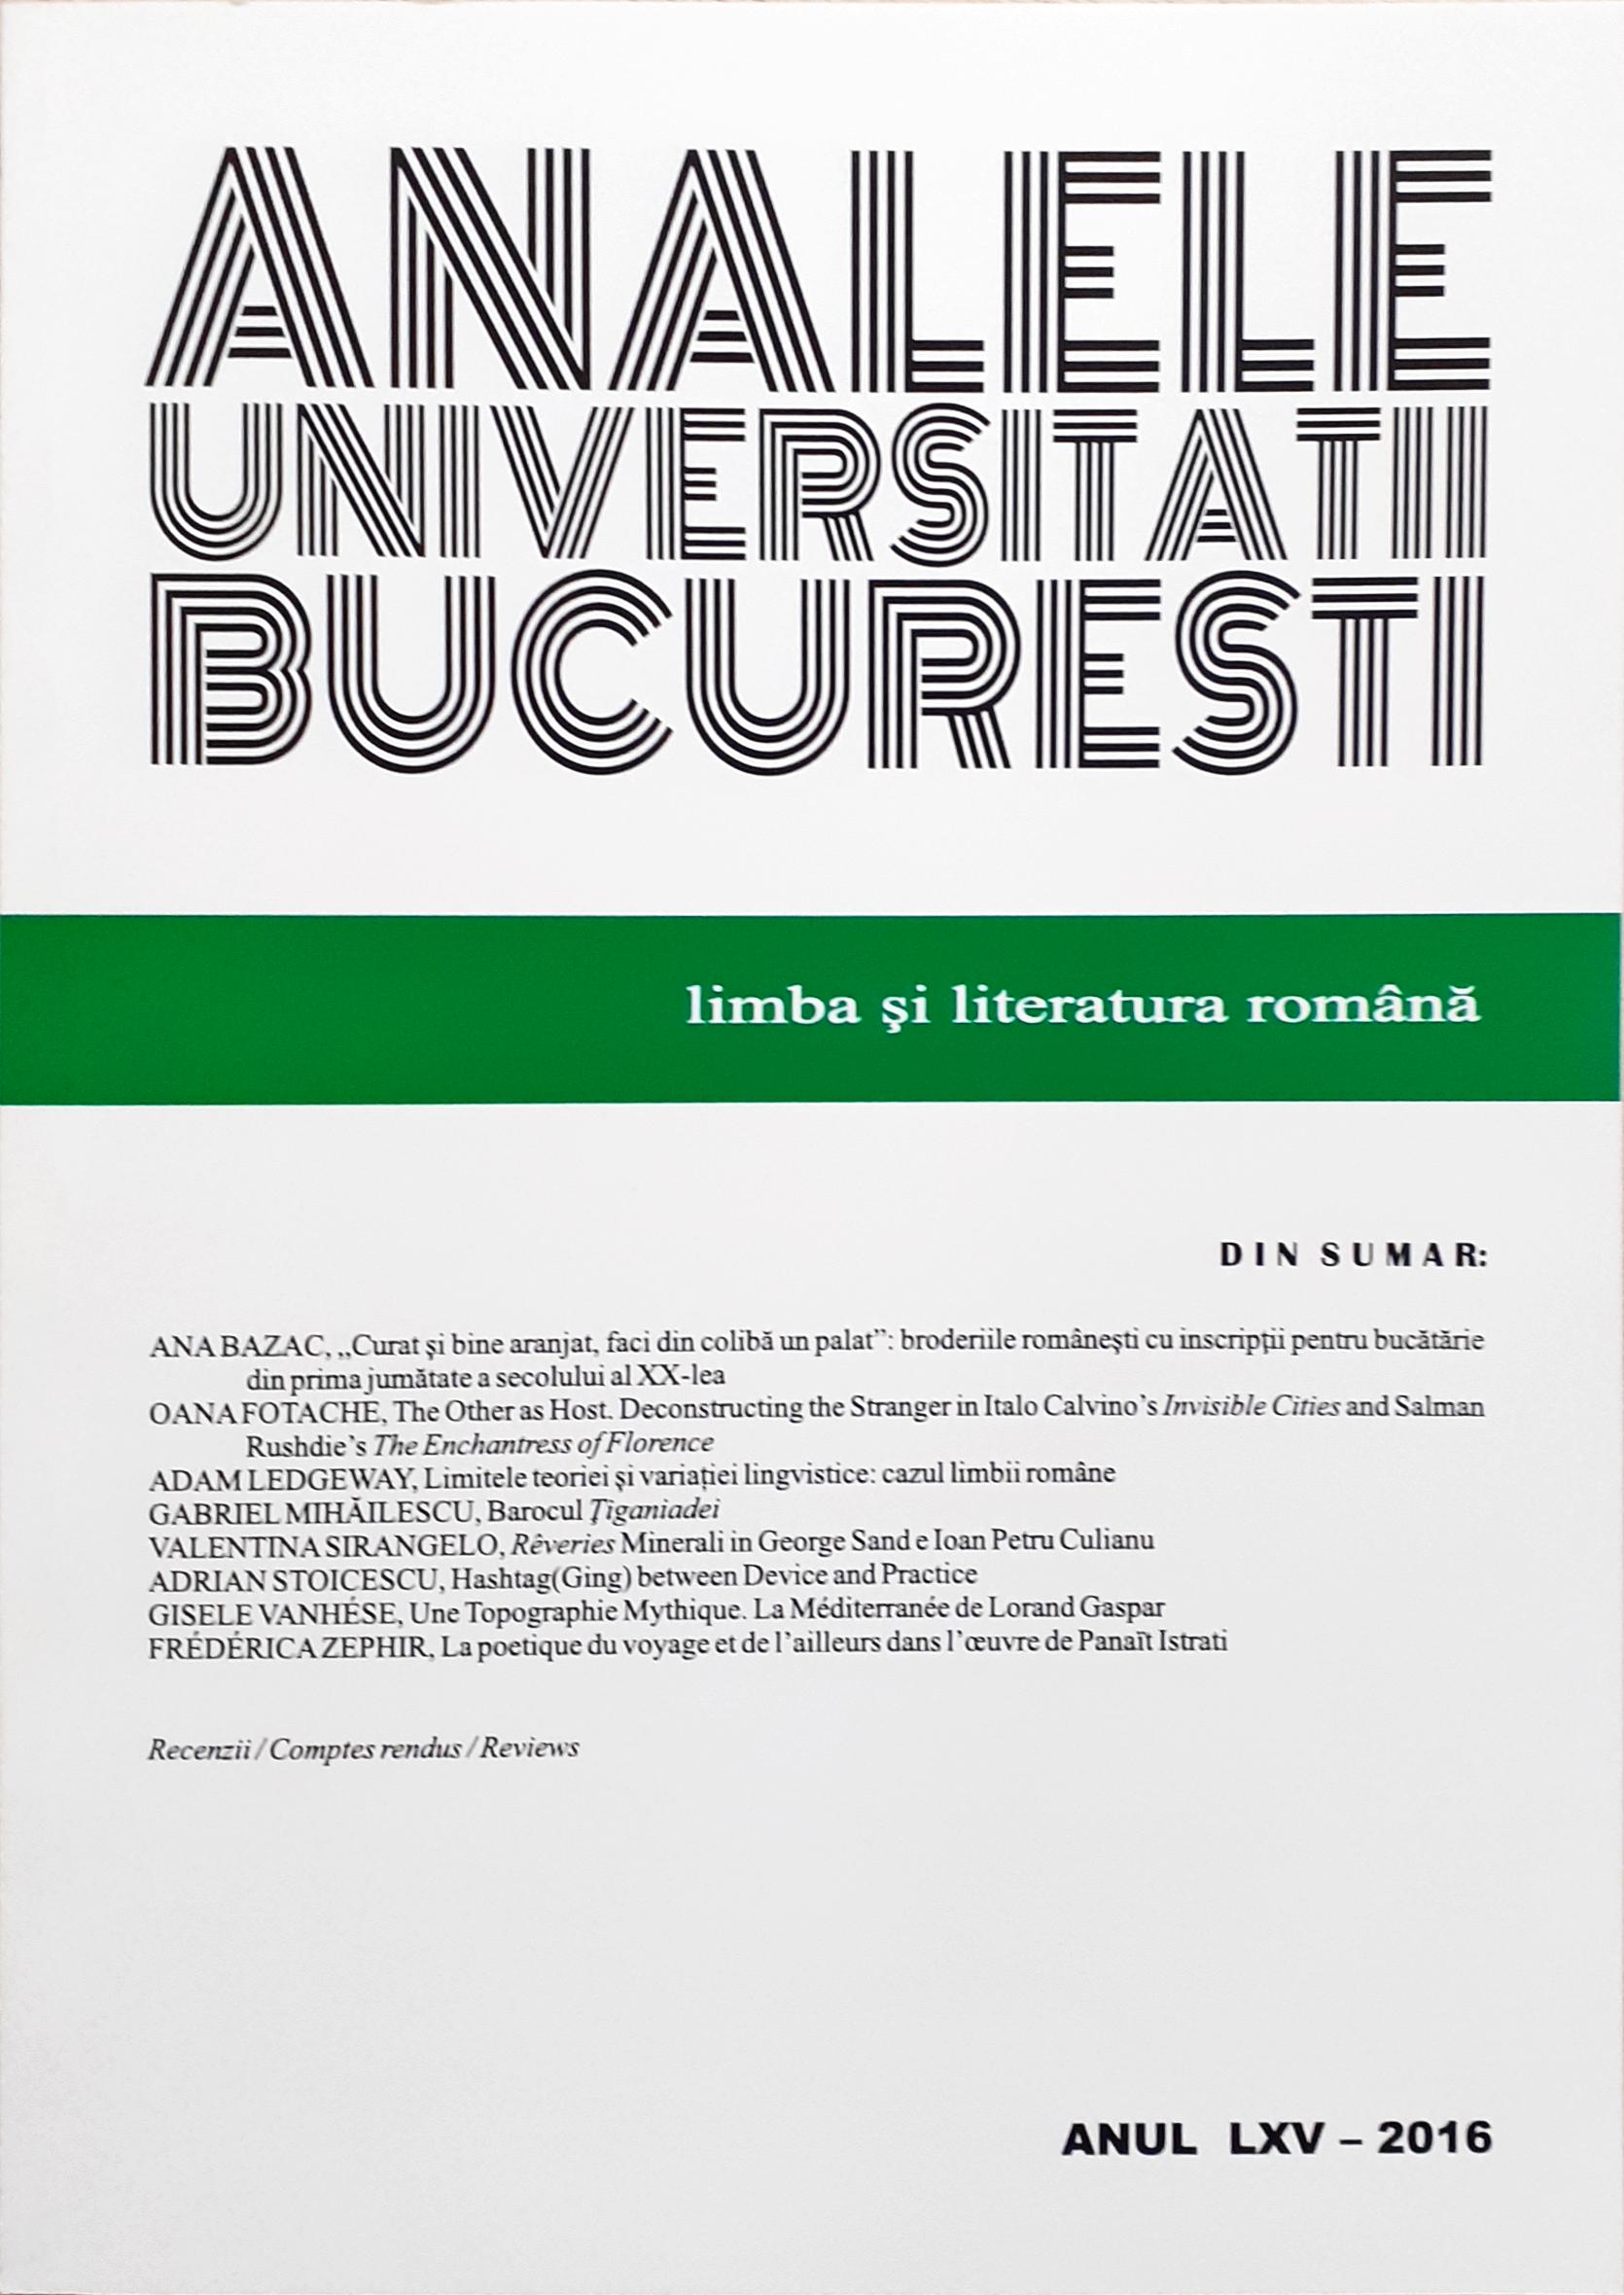 The Baroque of Ţiganiada Cover Image